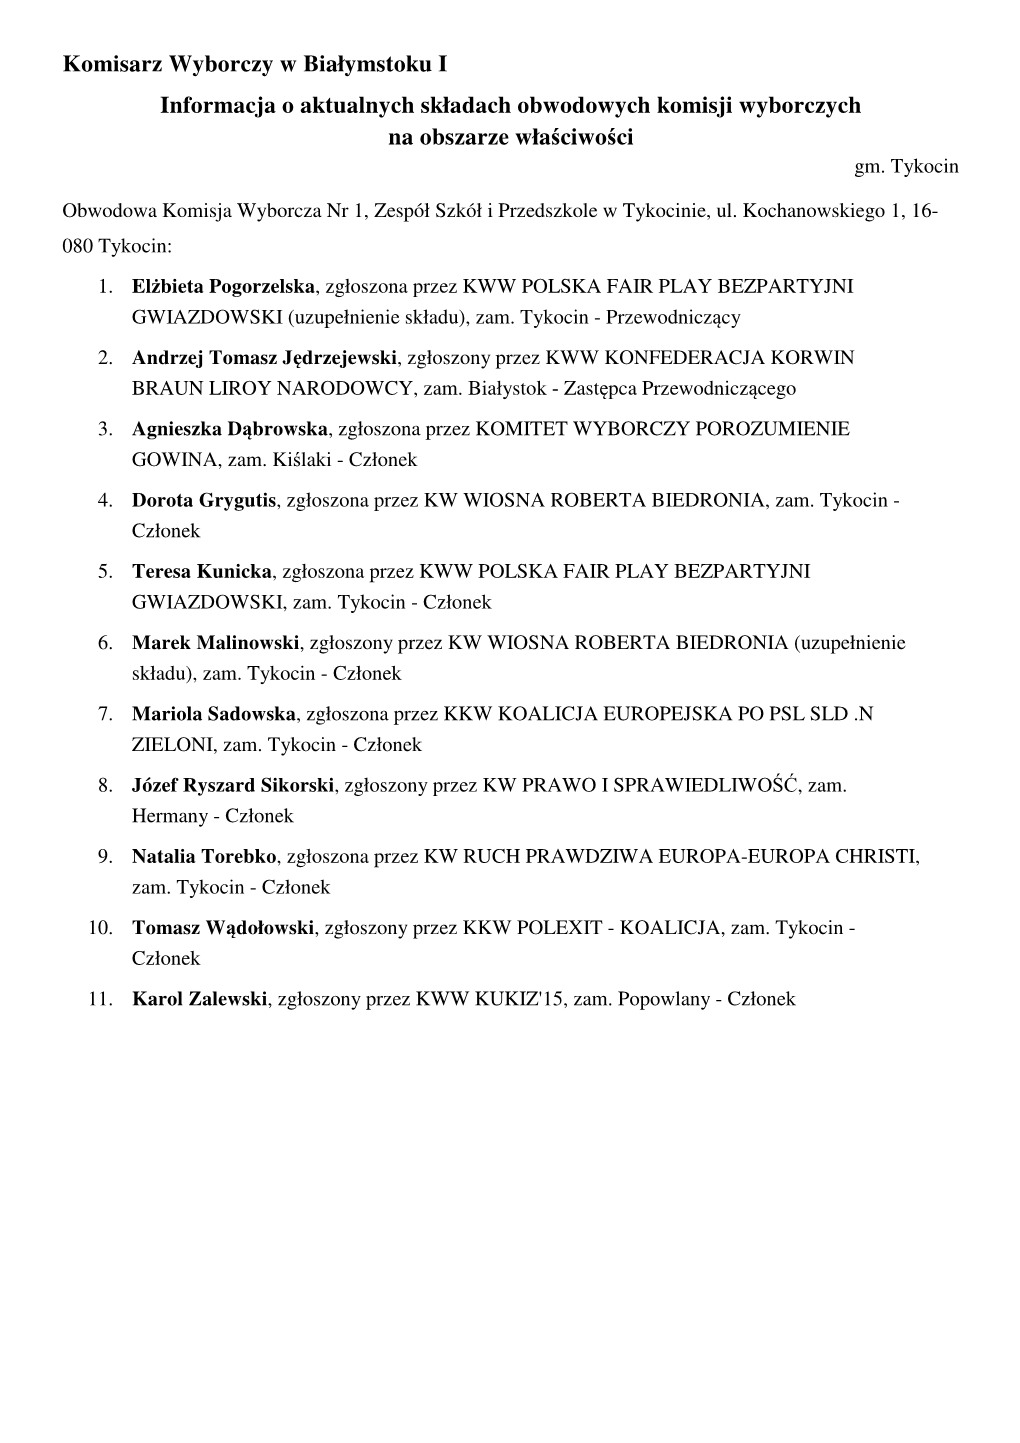 Komisarz Wyborczy W Białymstoku I Informacja O Aktualnych Składach Obwodowych Komisji Wyborczych Na Obszarze Właściwości